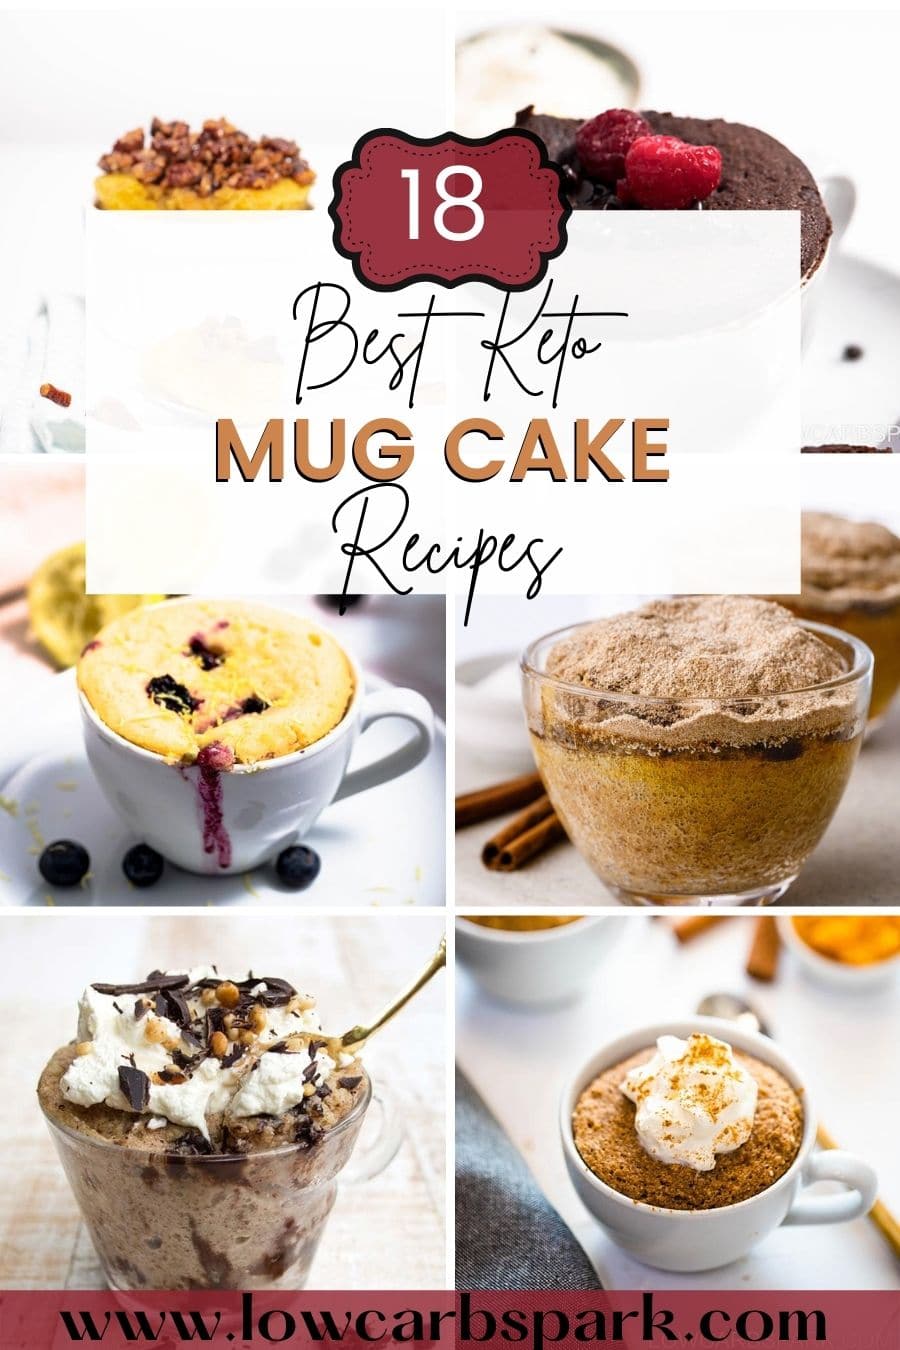 Top 18 Keto Mug Cake Recipes - Best Low Carb Mug Cakes